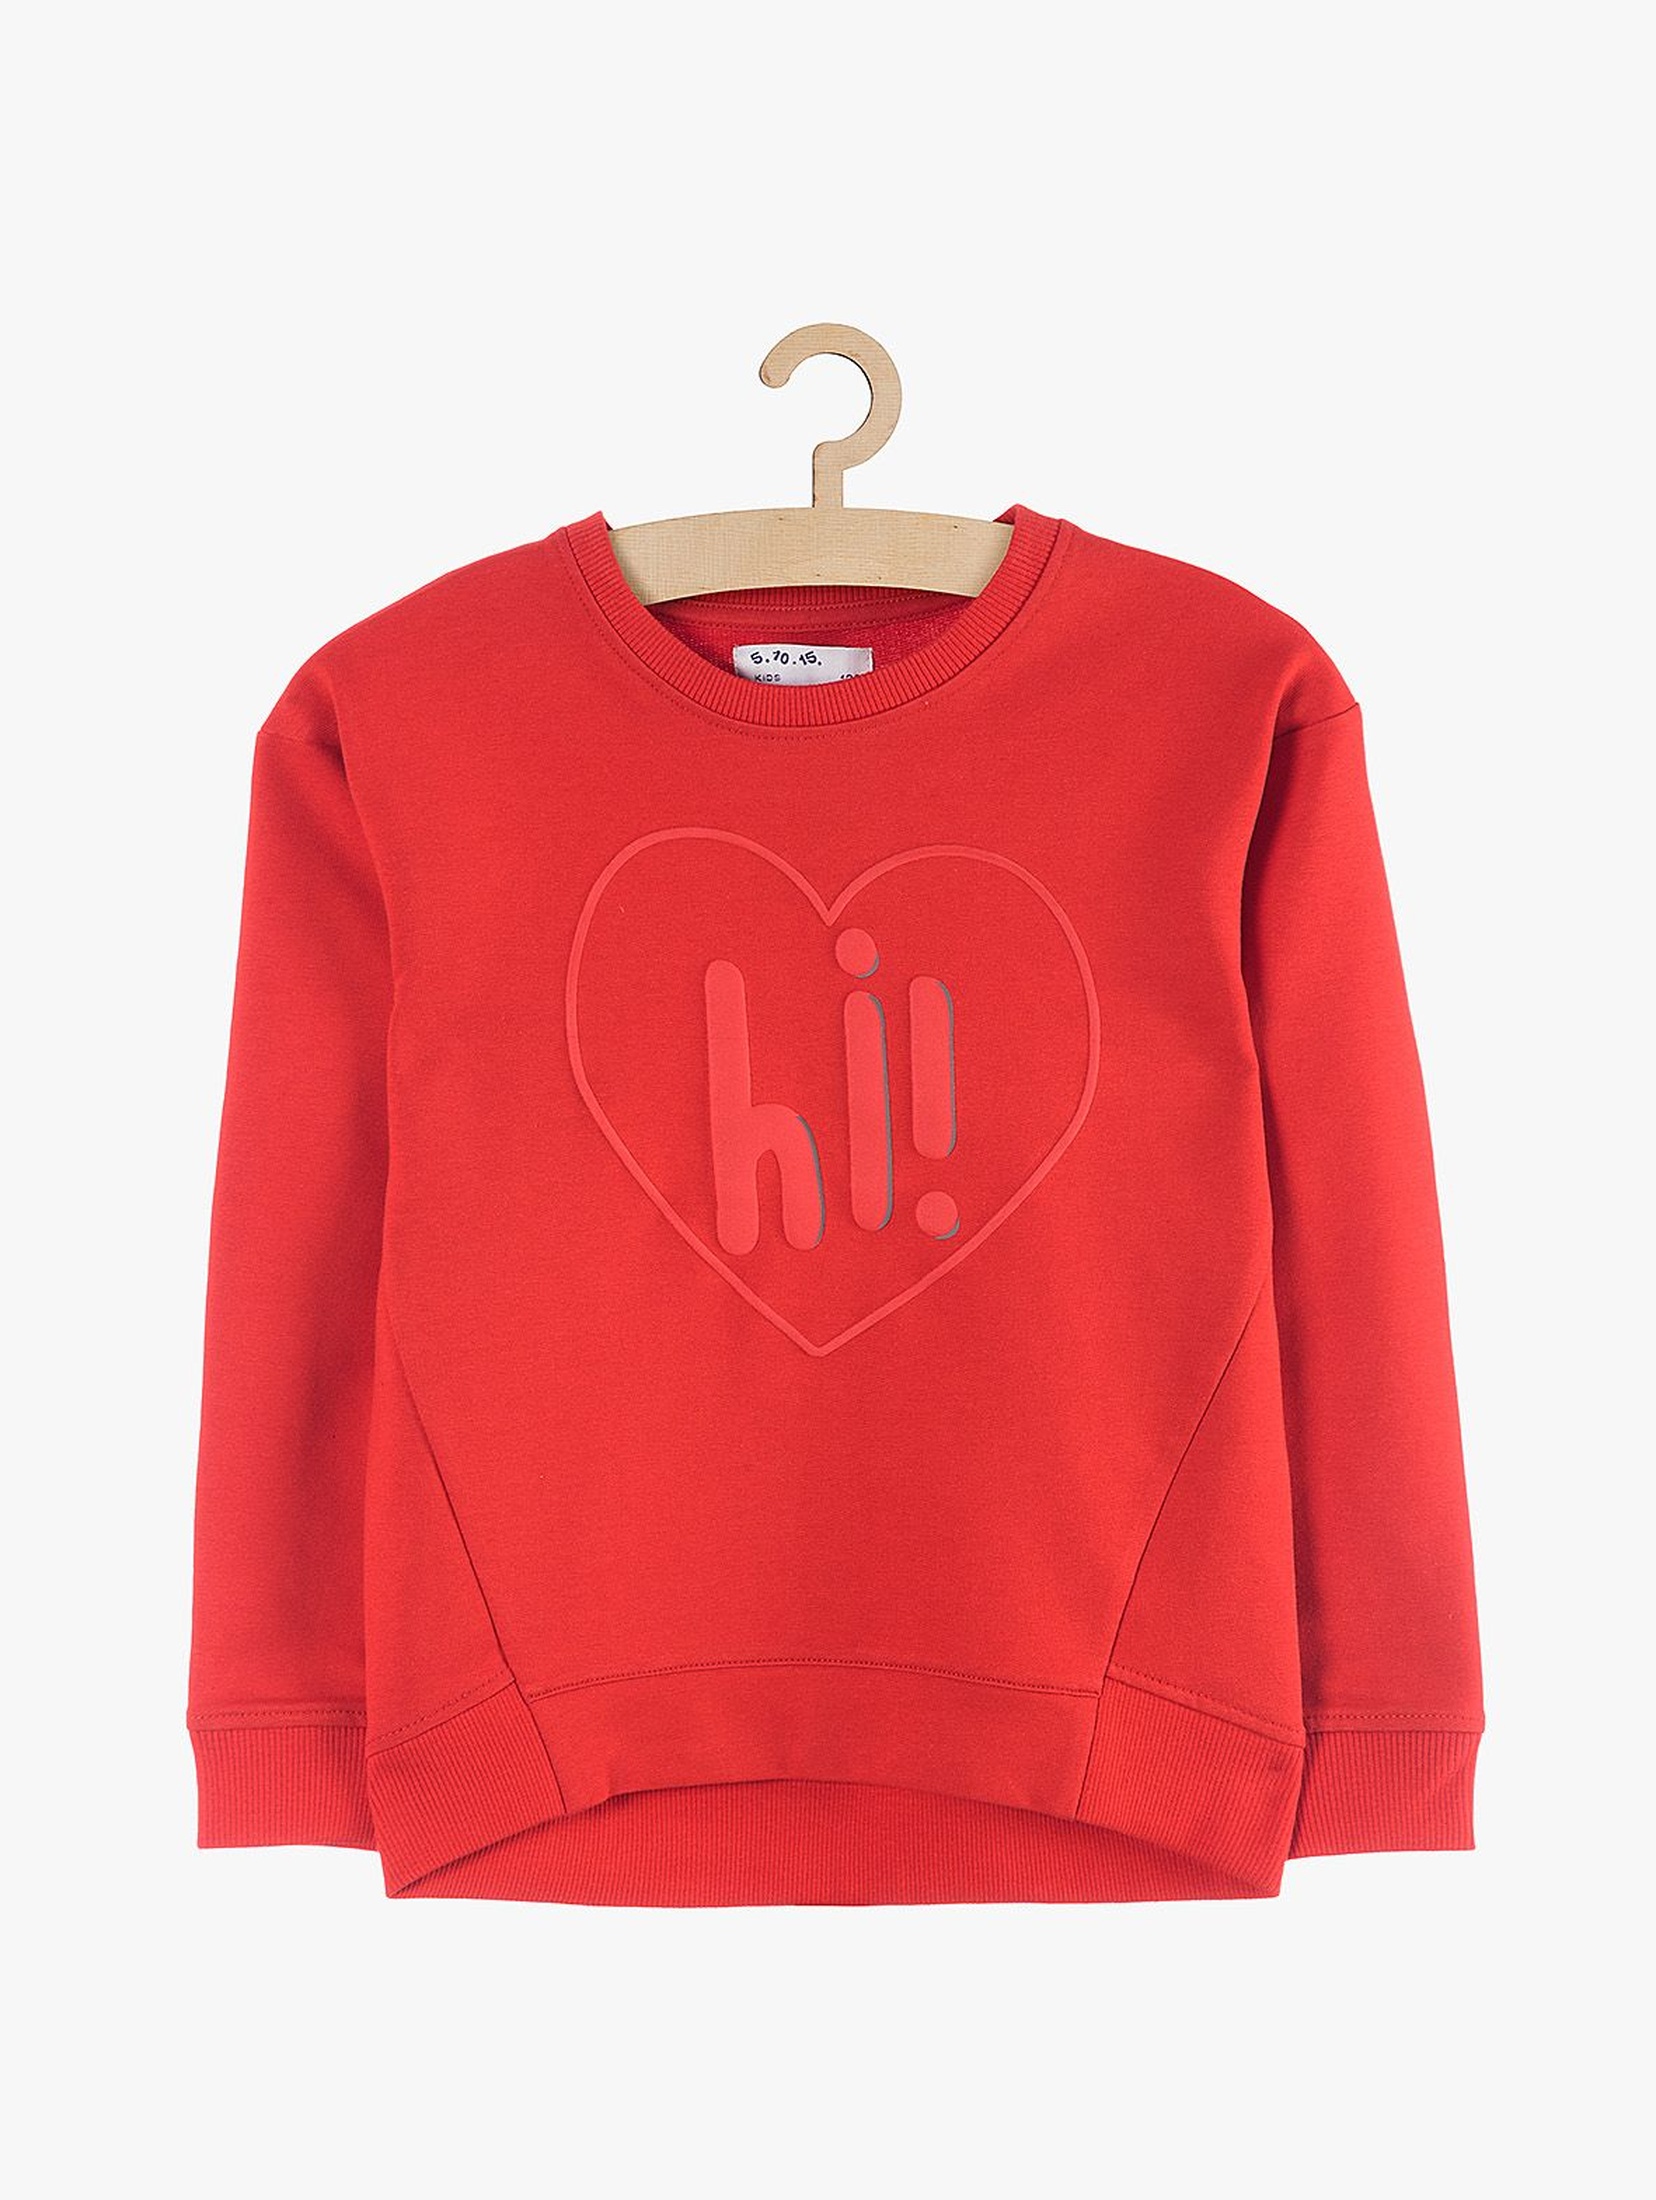 Bluza dresowa dla dziewczynki czerwona - z sercem